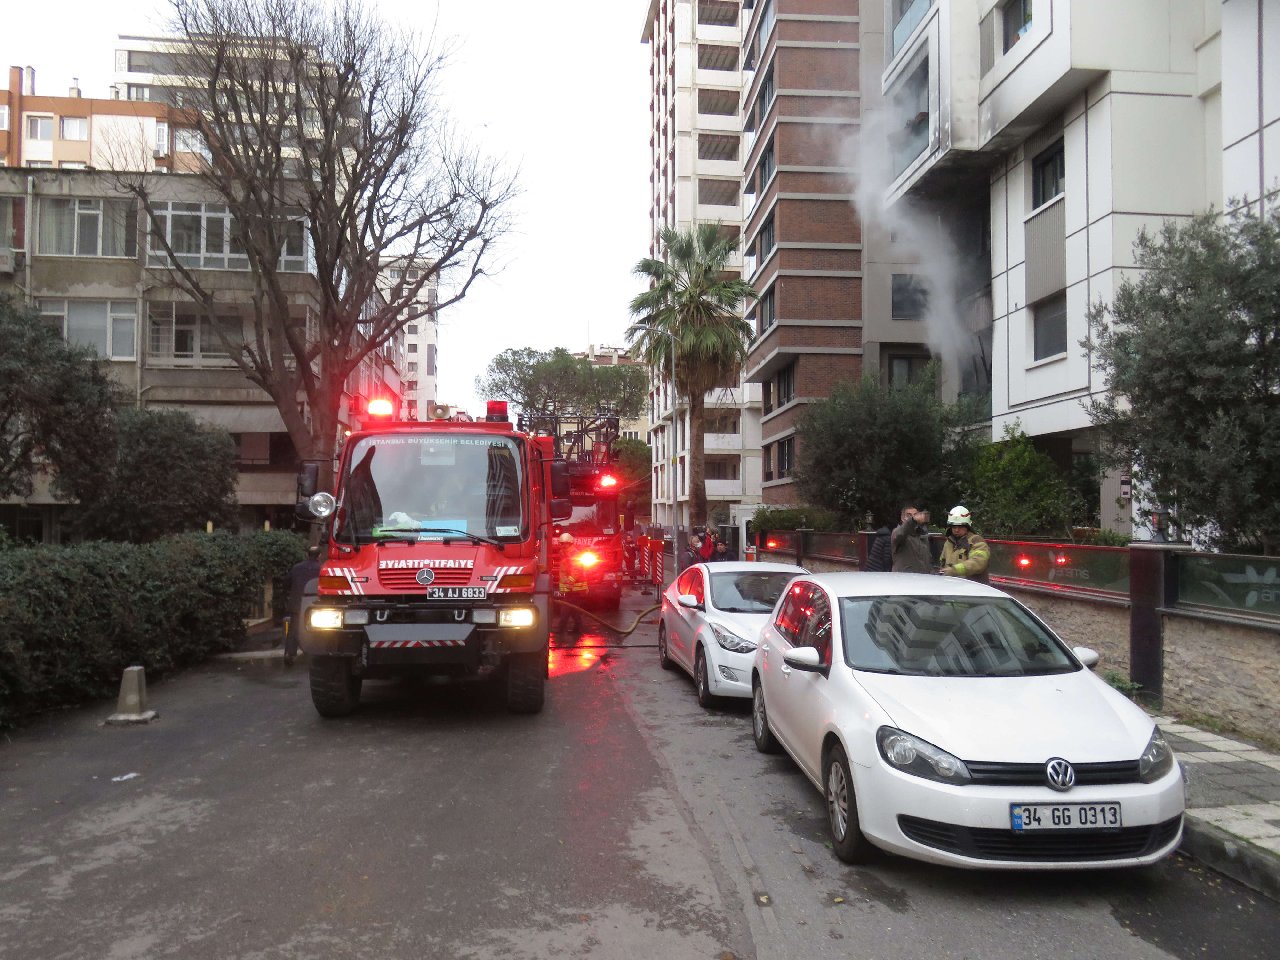 Kadıköy'de apartmanda yangın: 1 kişi hayatını kaybetti